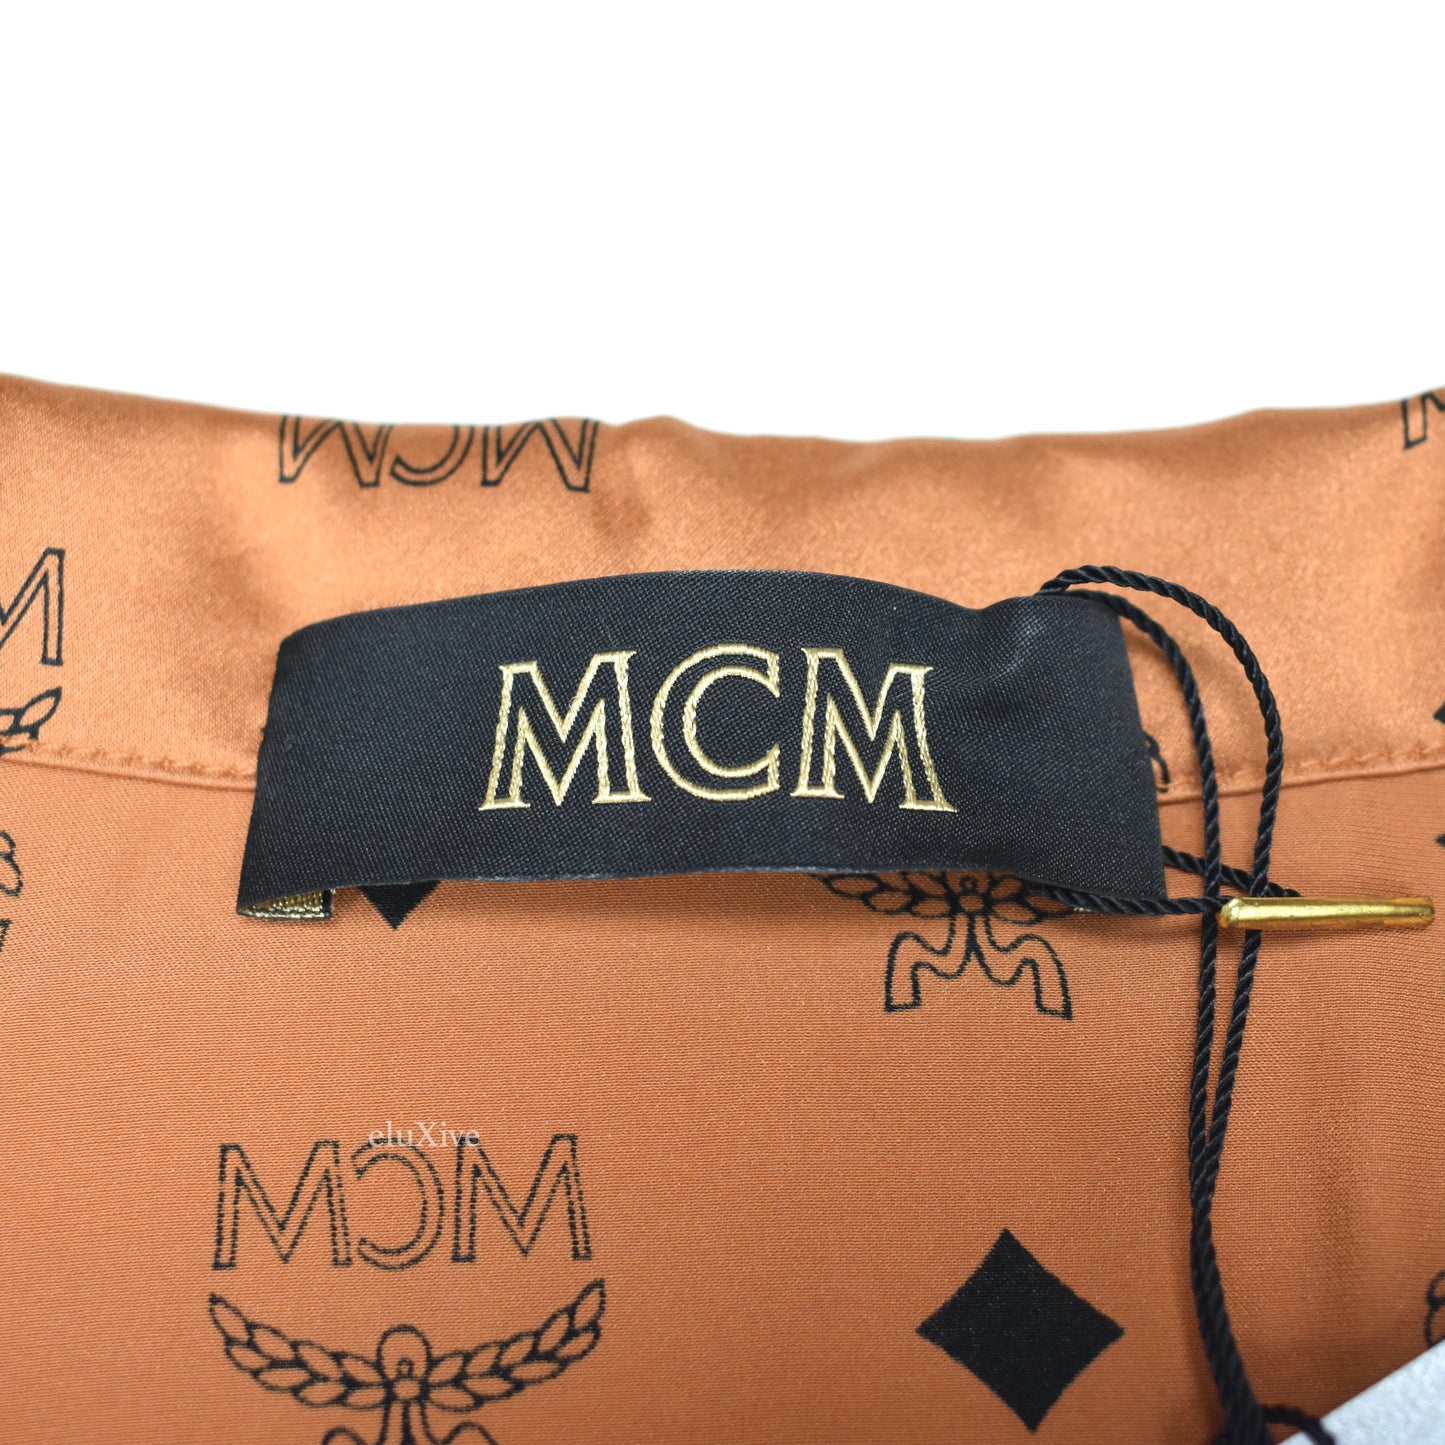 MCM - Cognac Monogram 100% Silk Pajama Shirt